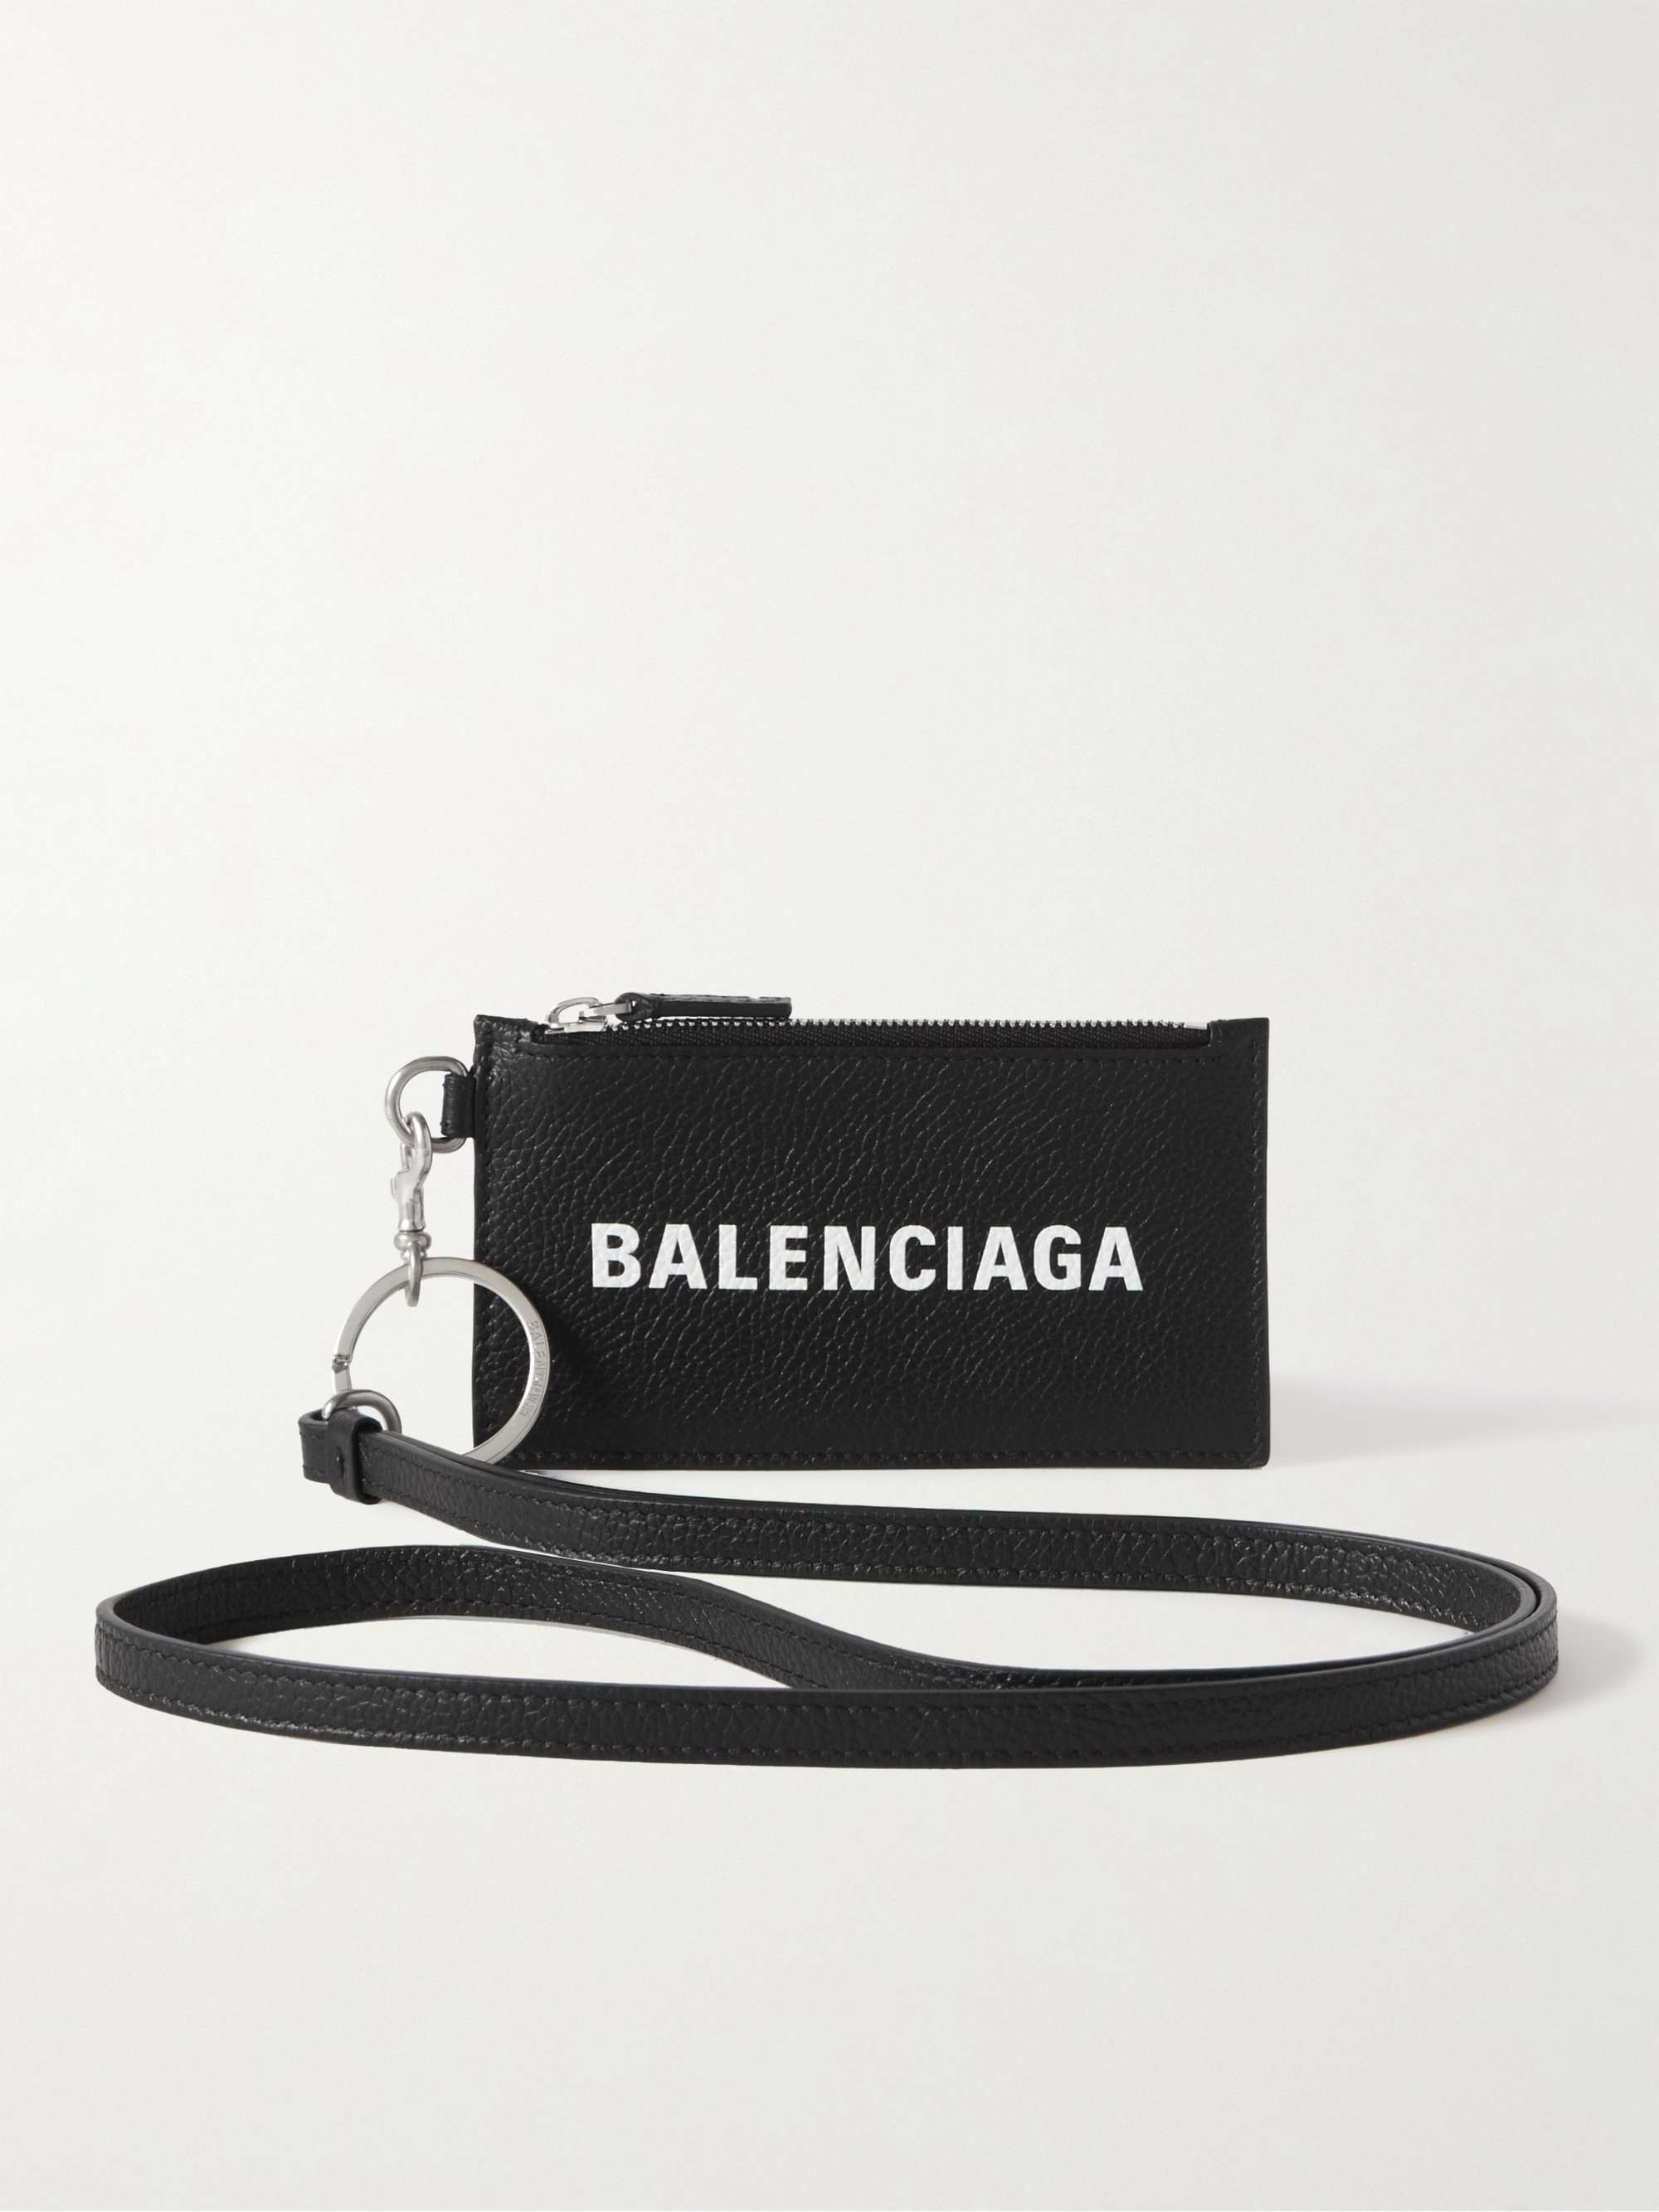 BALENCIAGA フルグレイン レザー カードケース ストラップ付き ロゴ